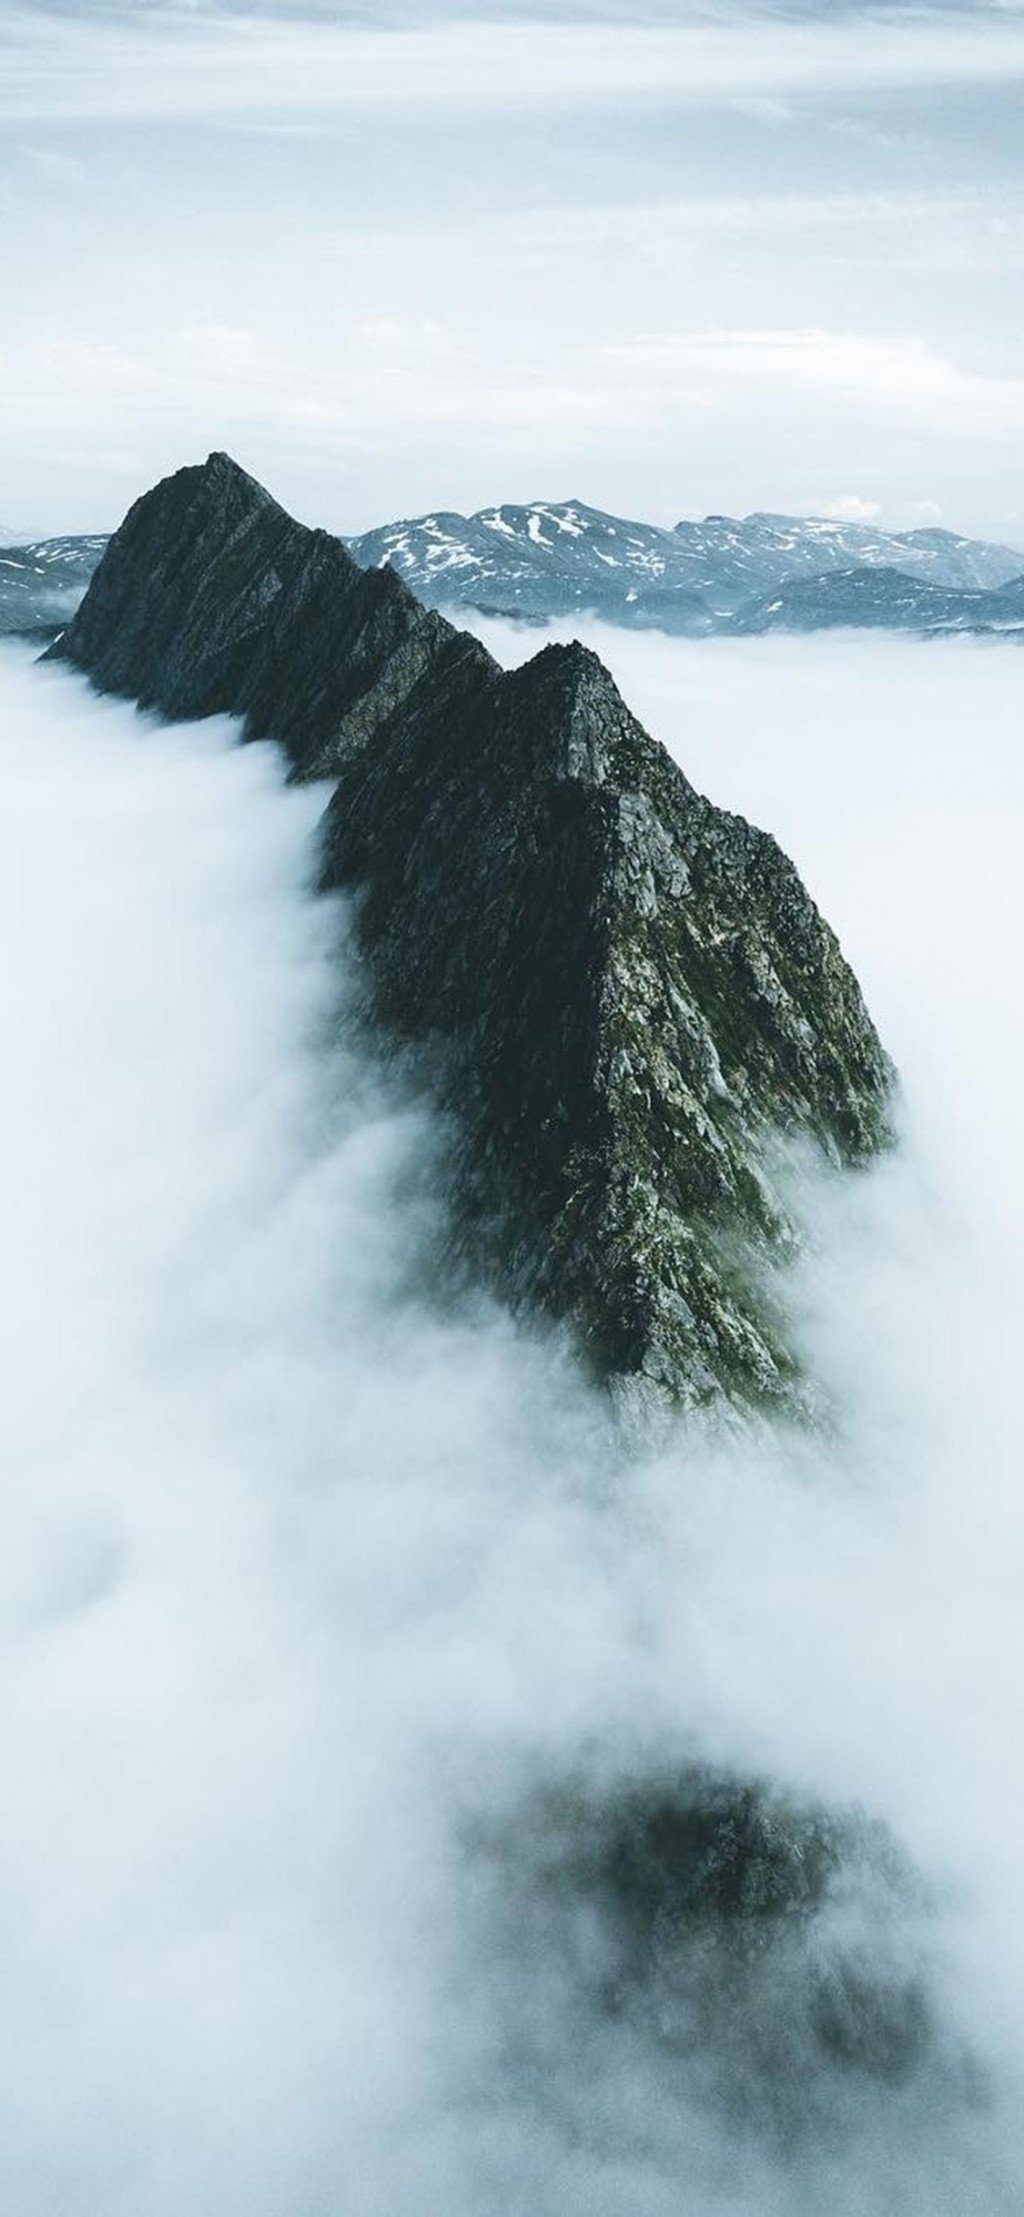 自然高山风景手机壁纸